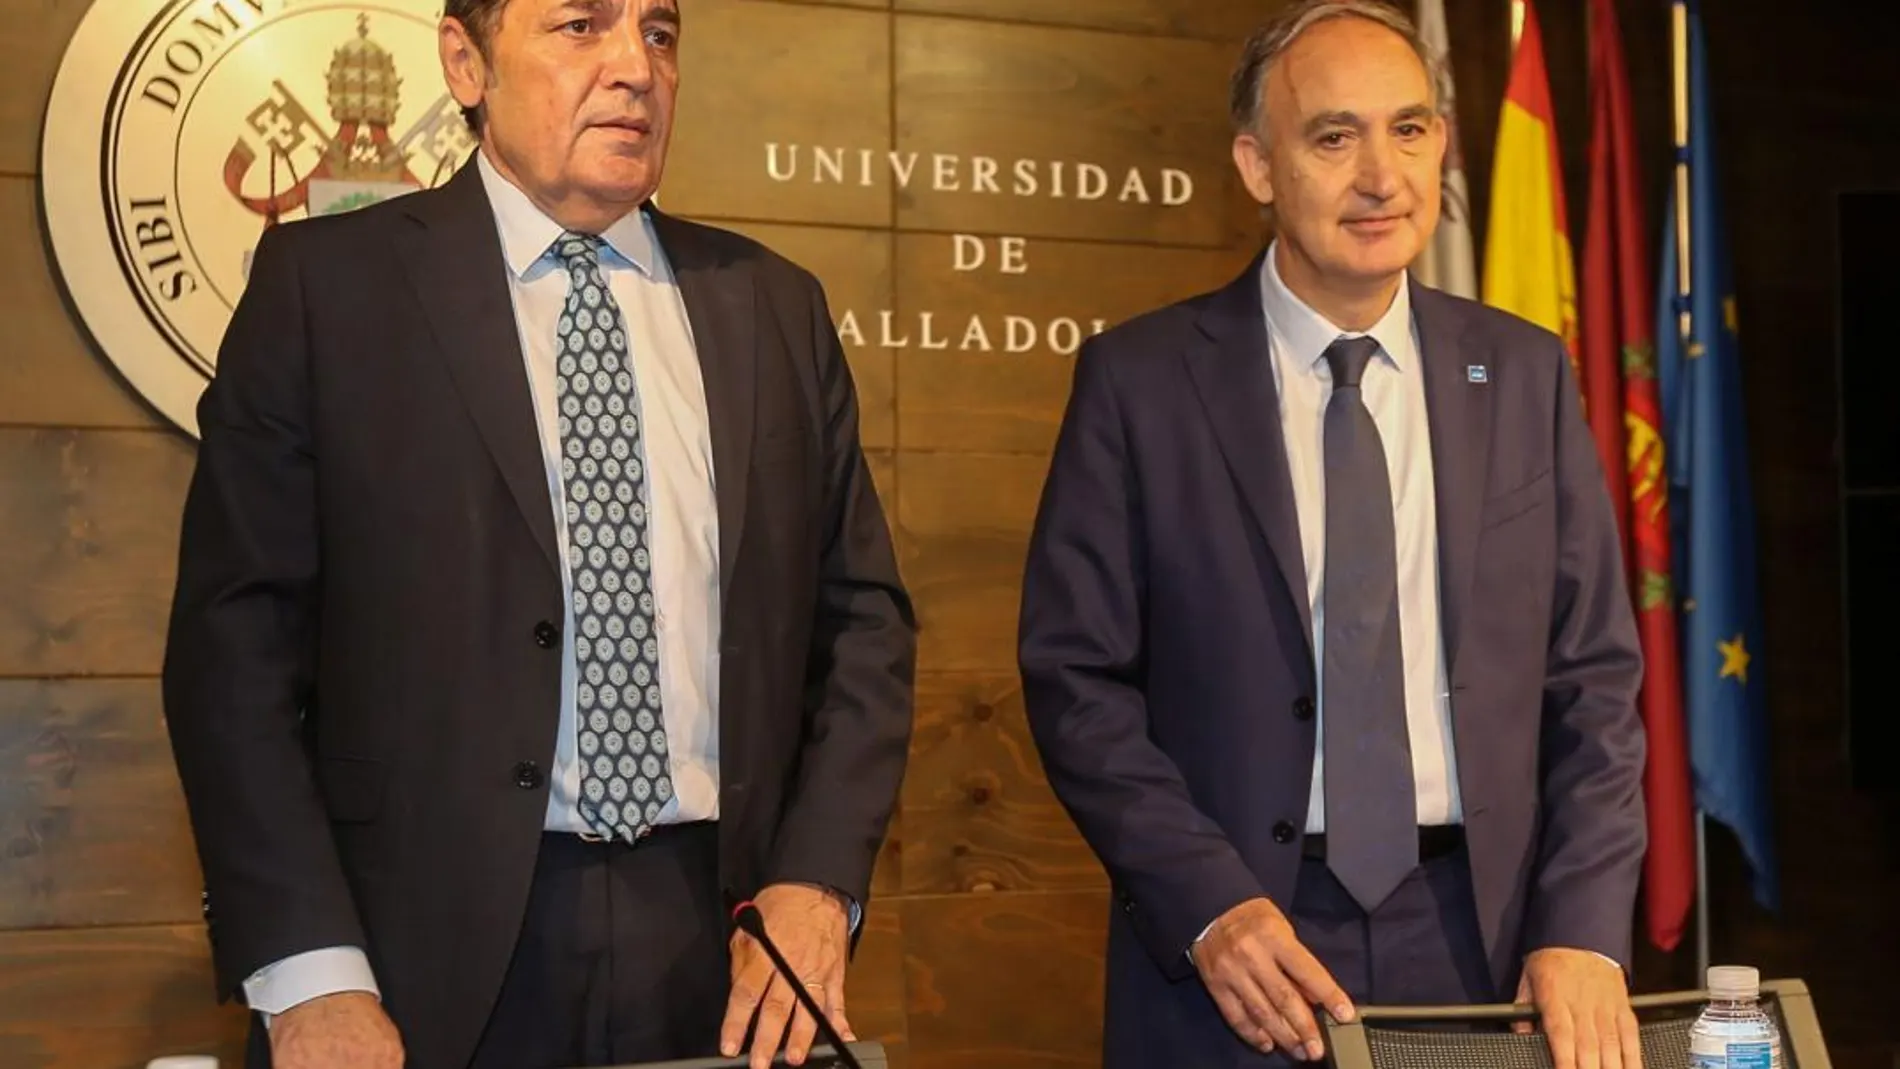 El consejero Sáez Aguado y el rector Antonio Largo informan de proyectos para ambas instituciones